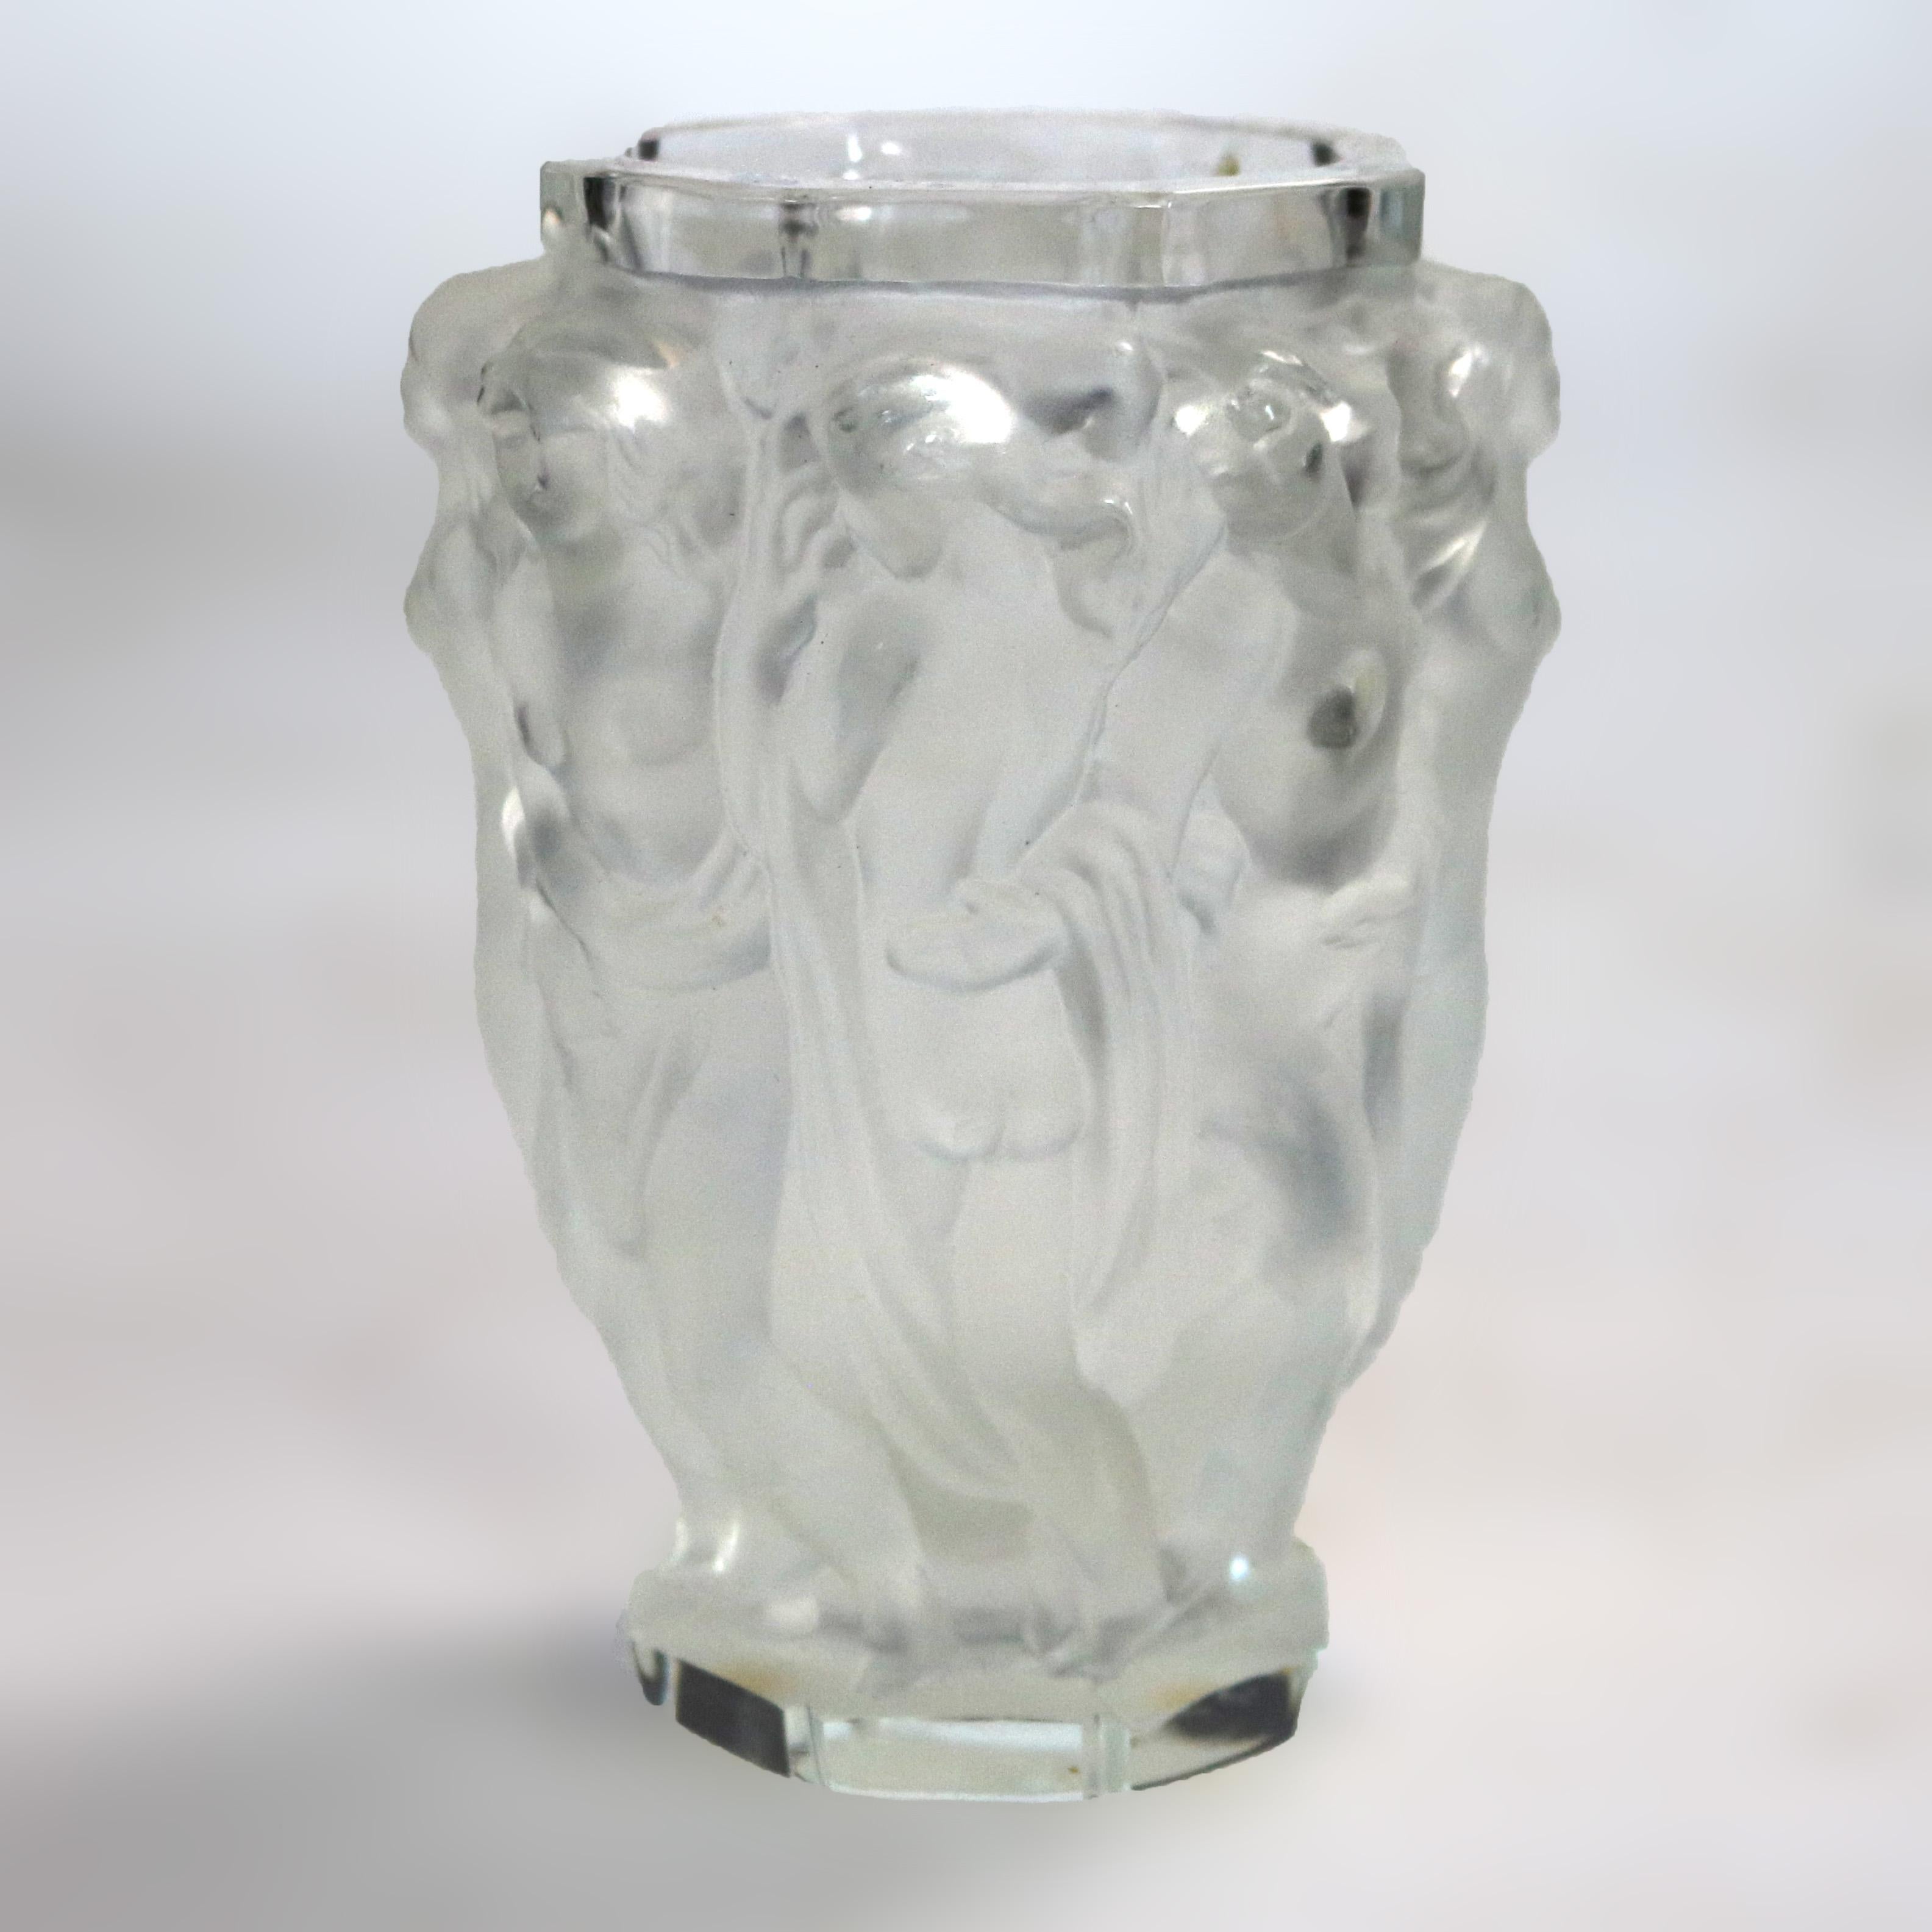 Ein Französisch Lalique Stil Art Deco Vase bietet Kunst Glas Konstruktion mit Frauen in Relief, signiert FH wie fotografiert, um 1920.

Maße - 5,75 